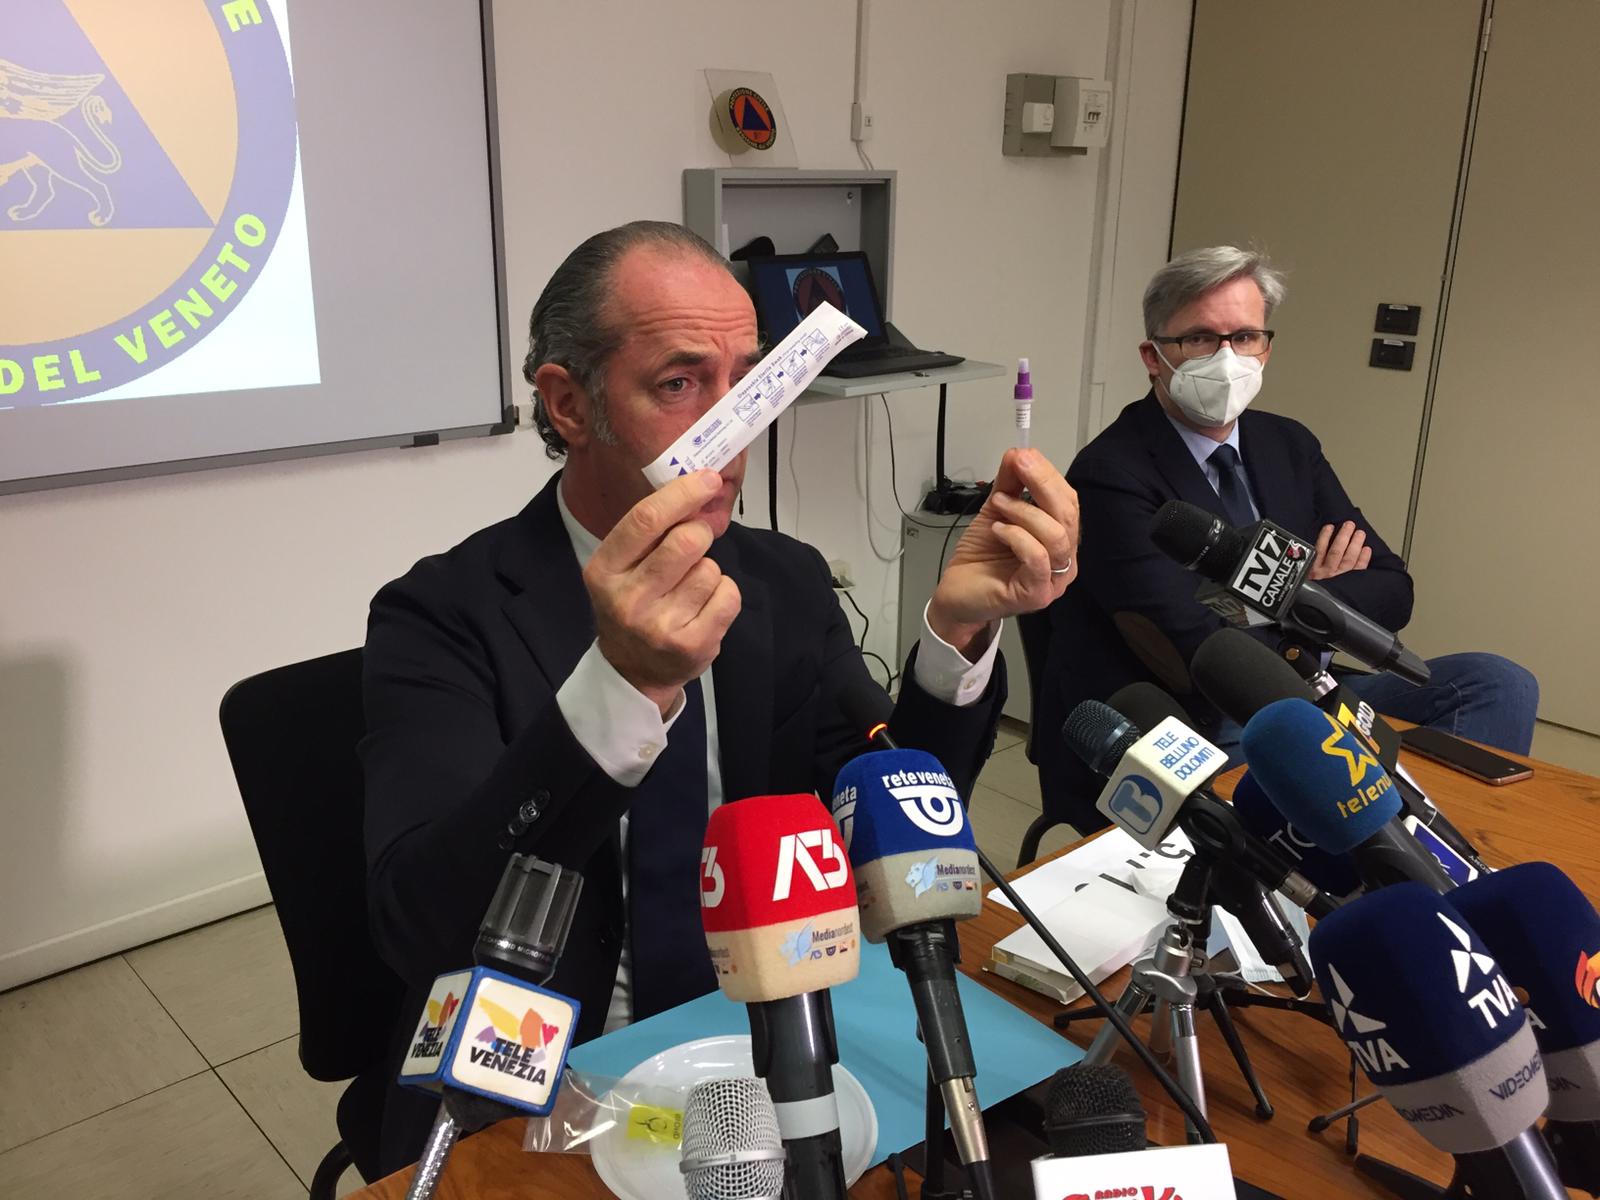 Covid-19, la situazione del Veneto: Verona in maglia nera taglierà del 30% i servizi sanitari non urgenti. Zaia: Spettacolo immondo i vacanzieri del weekend